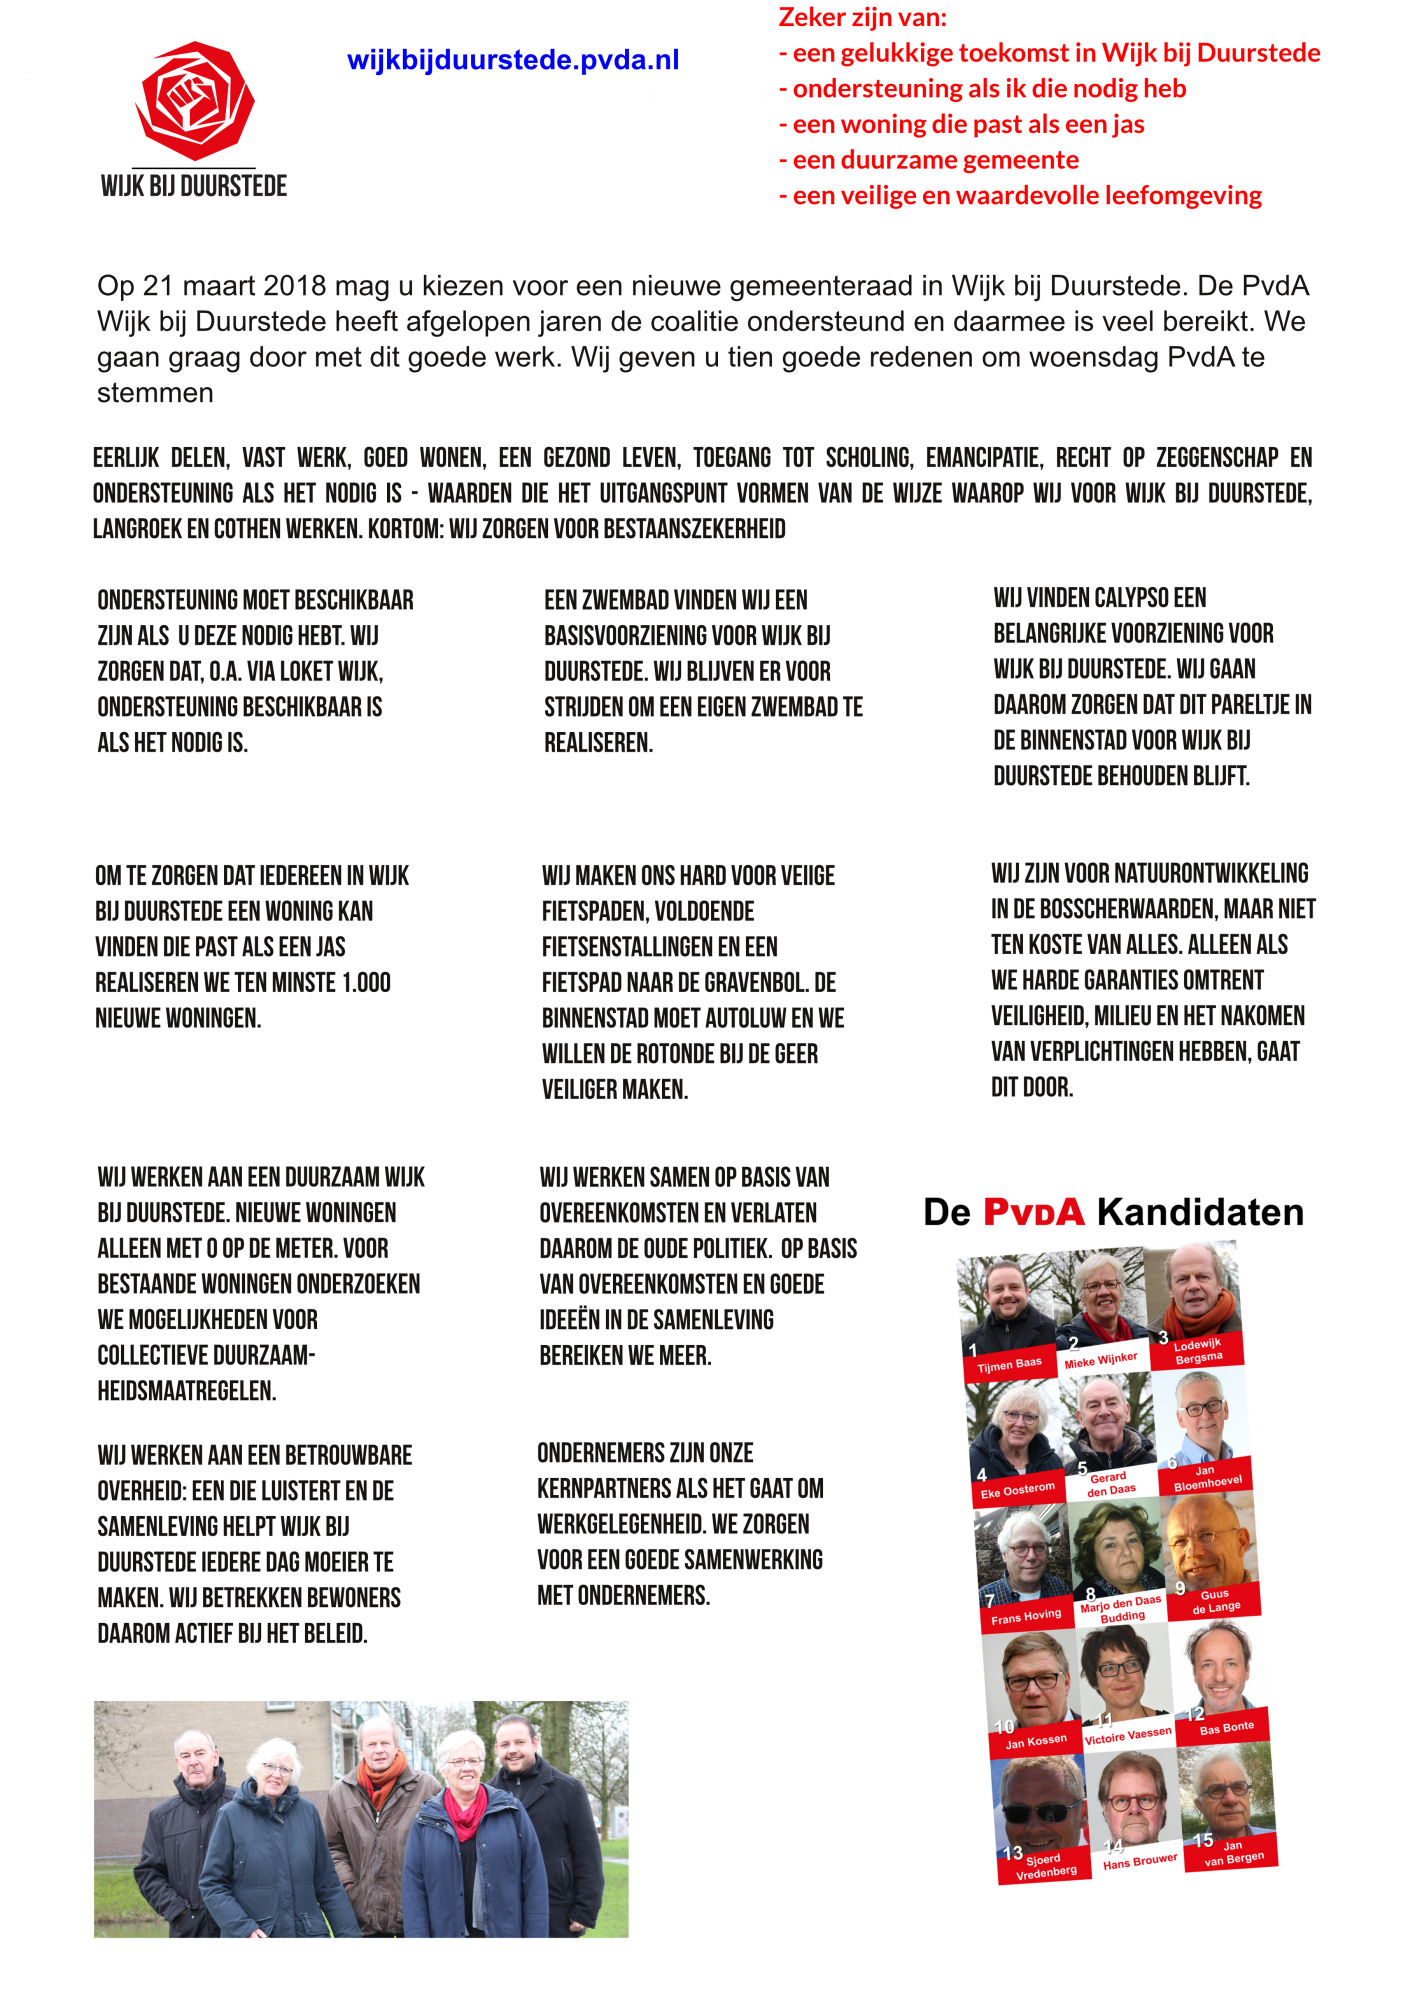 https://wijkbijduurstede.pvda.nl/nieuws/10-redenen-om-pvda-stemmen/